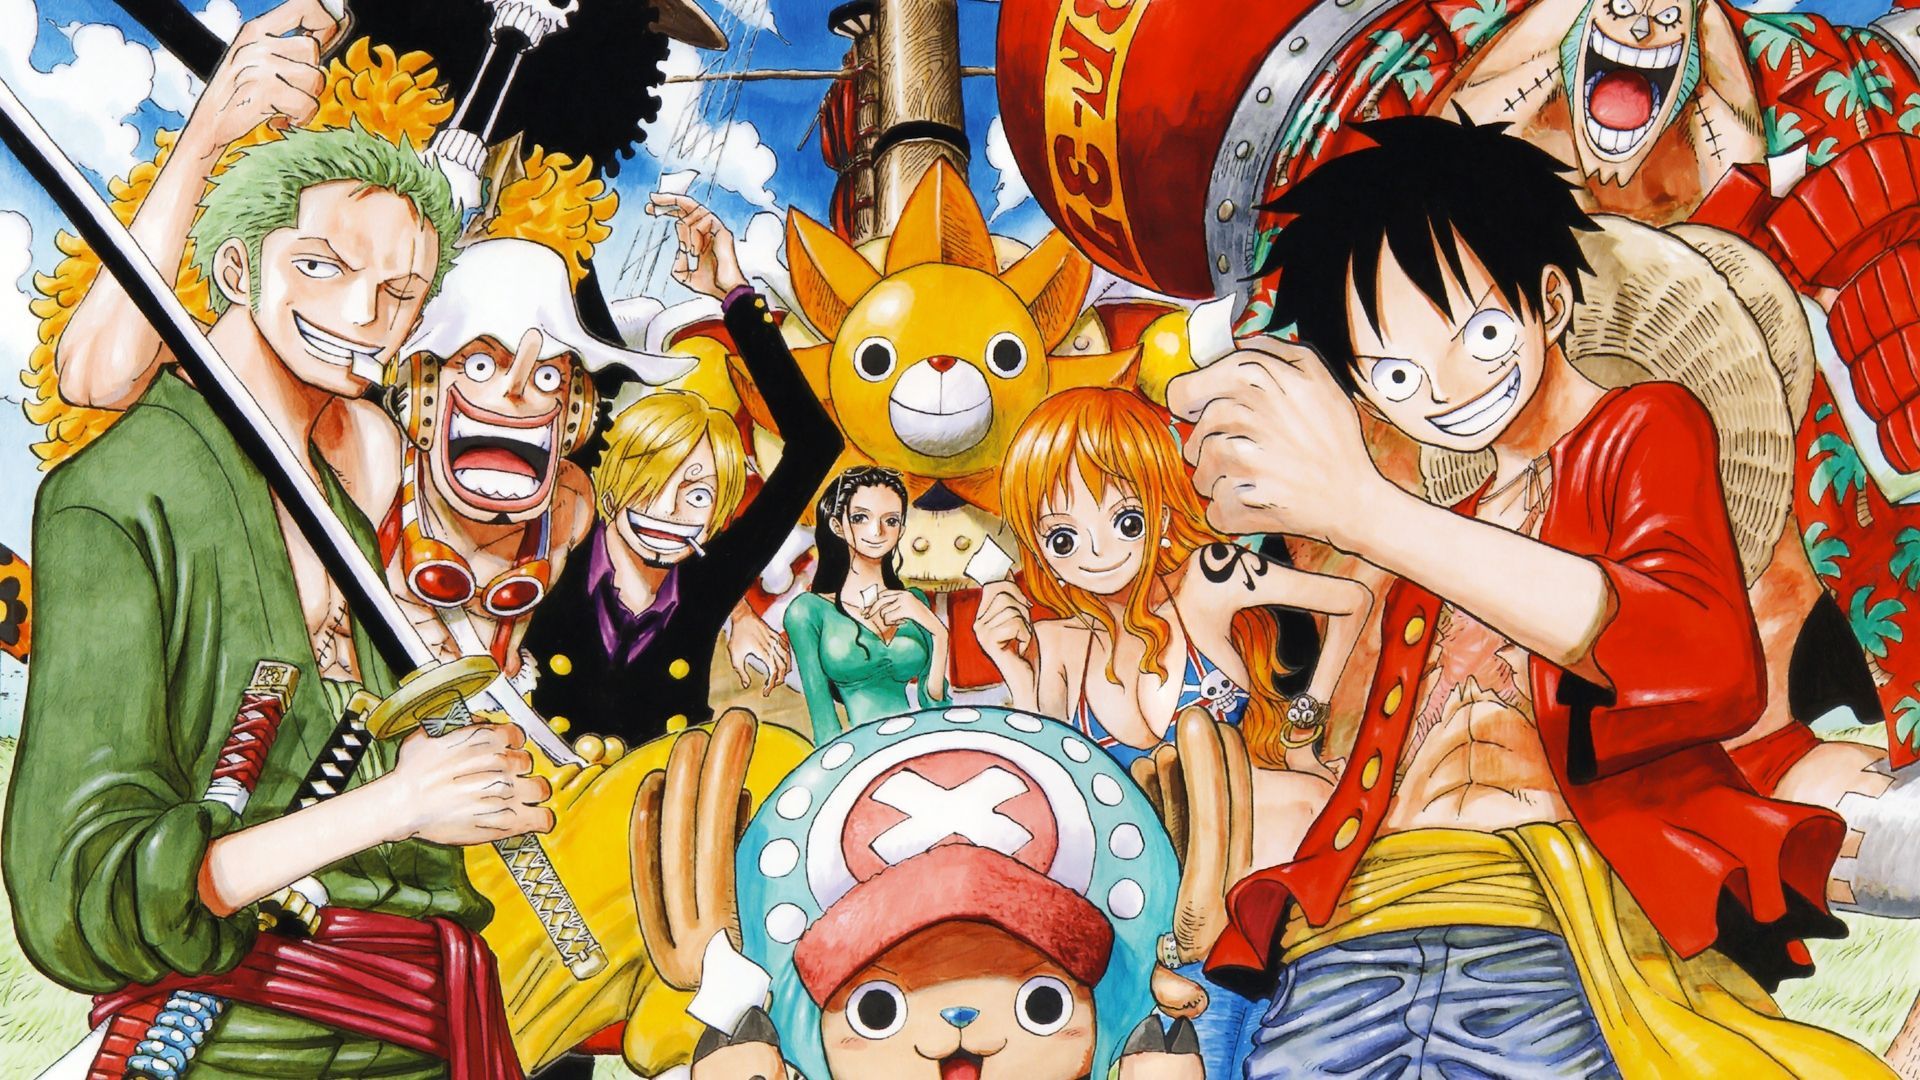 Crew One Piece Wallpaper Widescreen #3084 Wallpaper | High Quality ...